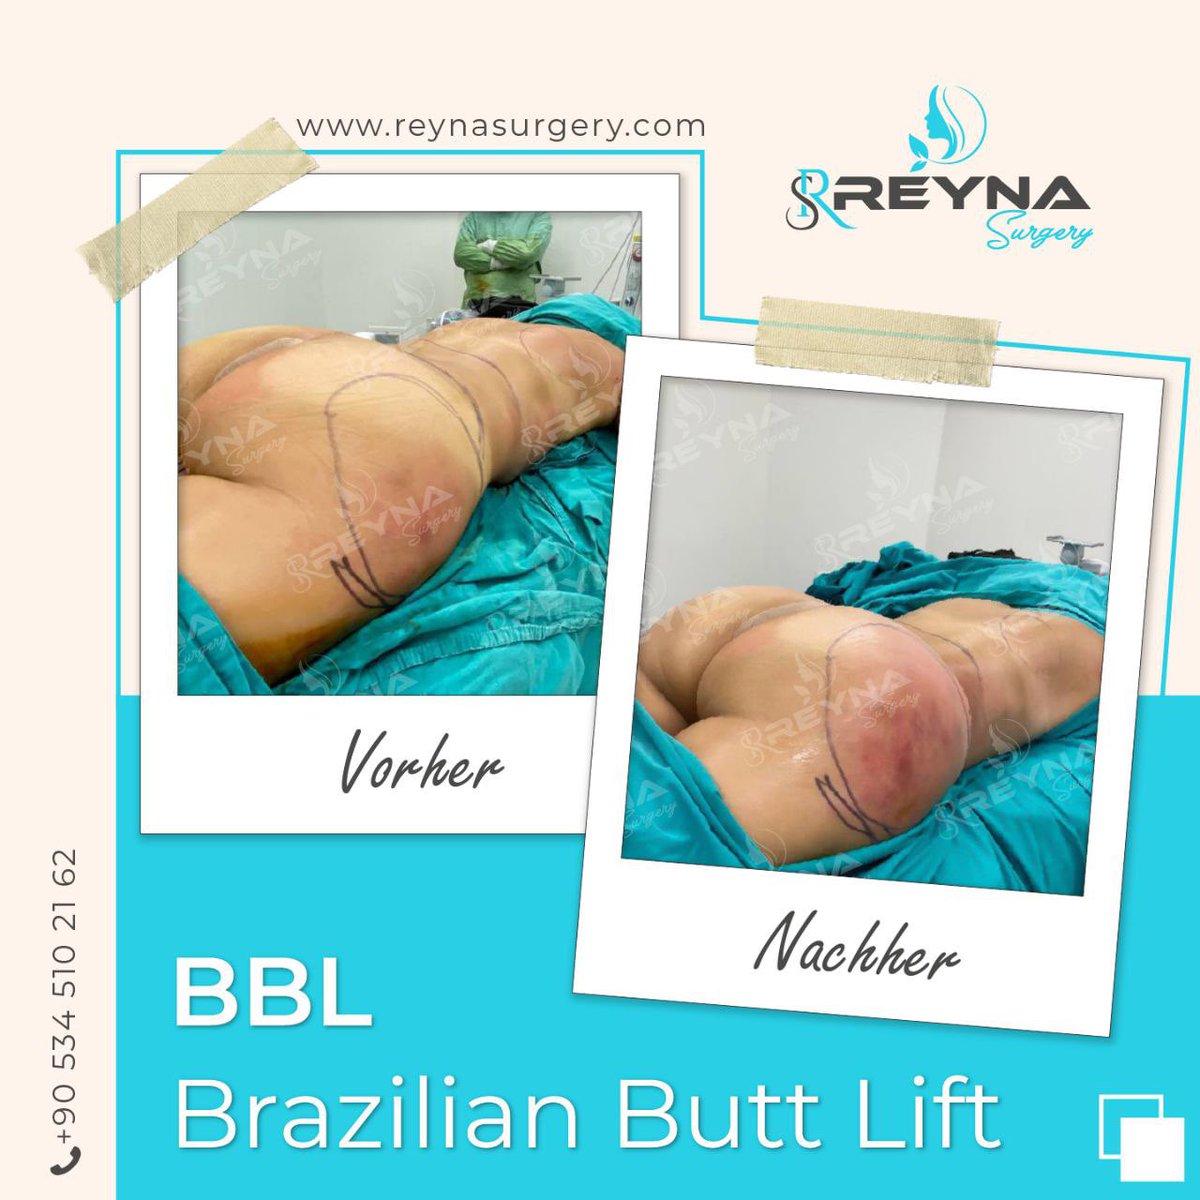 Brazilian Butt Lift.☘️

Yeni yaza sende hazırlan. Dümdüz bir karın, ince bel, dolgun ve yuvarlak kalça😍

📞 +90 534 510 2162

Çapa Tıp

#bbl #bblsurgery #brazilianbuttlift #po #polift
#schönerpo #urlaub #strand #bikinibody #plastischechirurgie #istanbul #türkei #reynasurgery